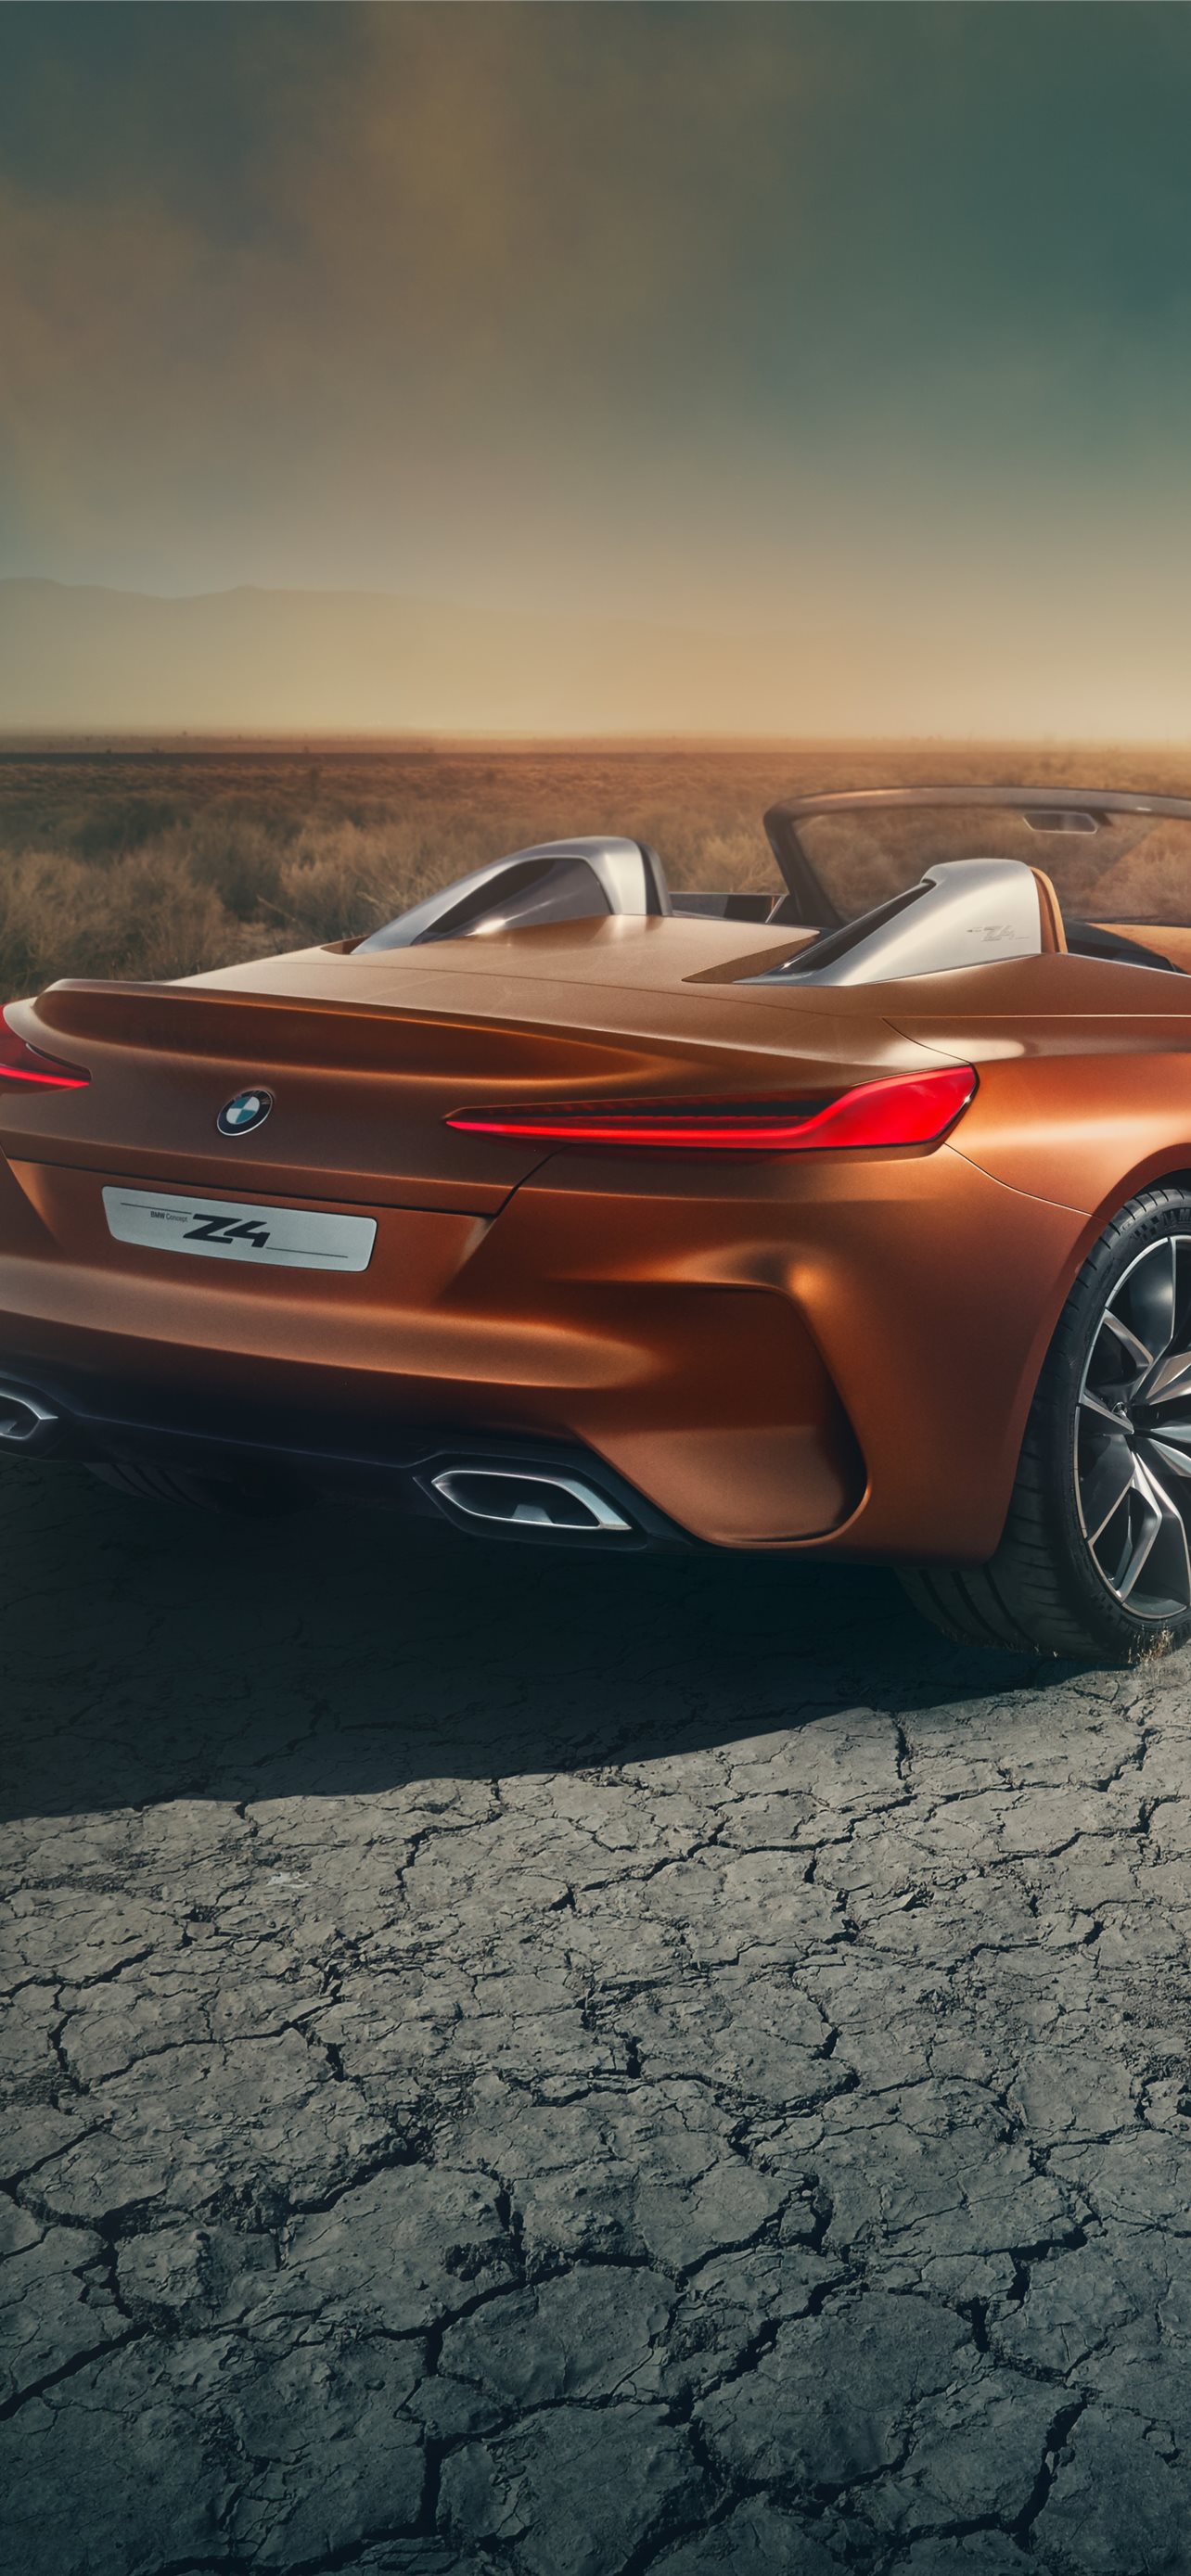 Nextgen BMW Z4 concept partially revealed  Autocar India